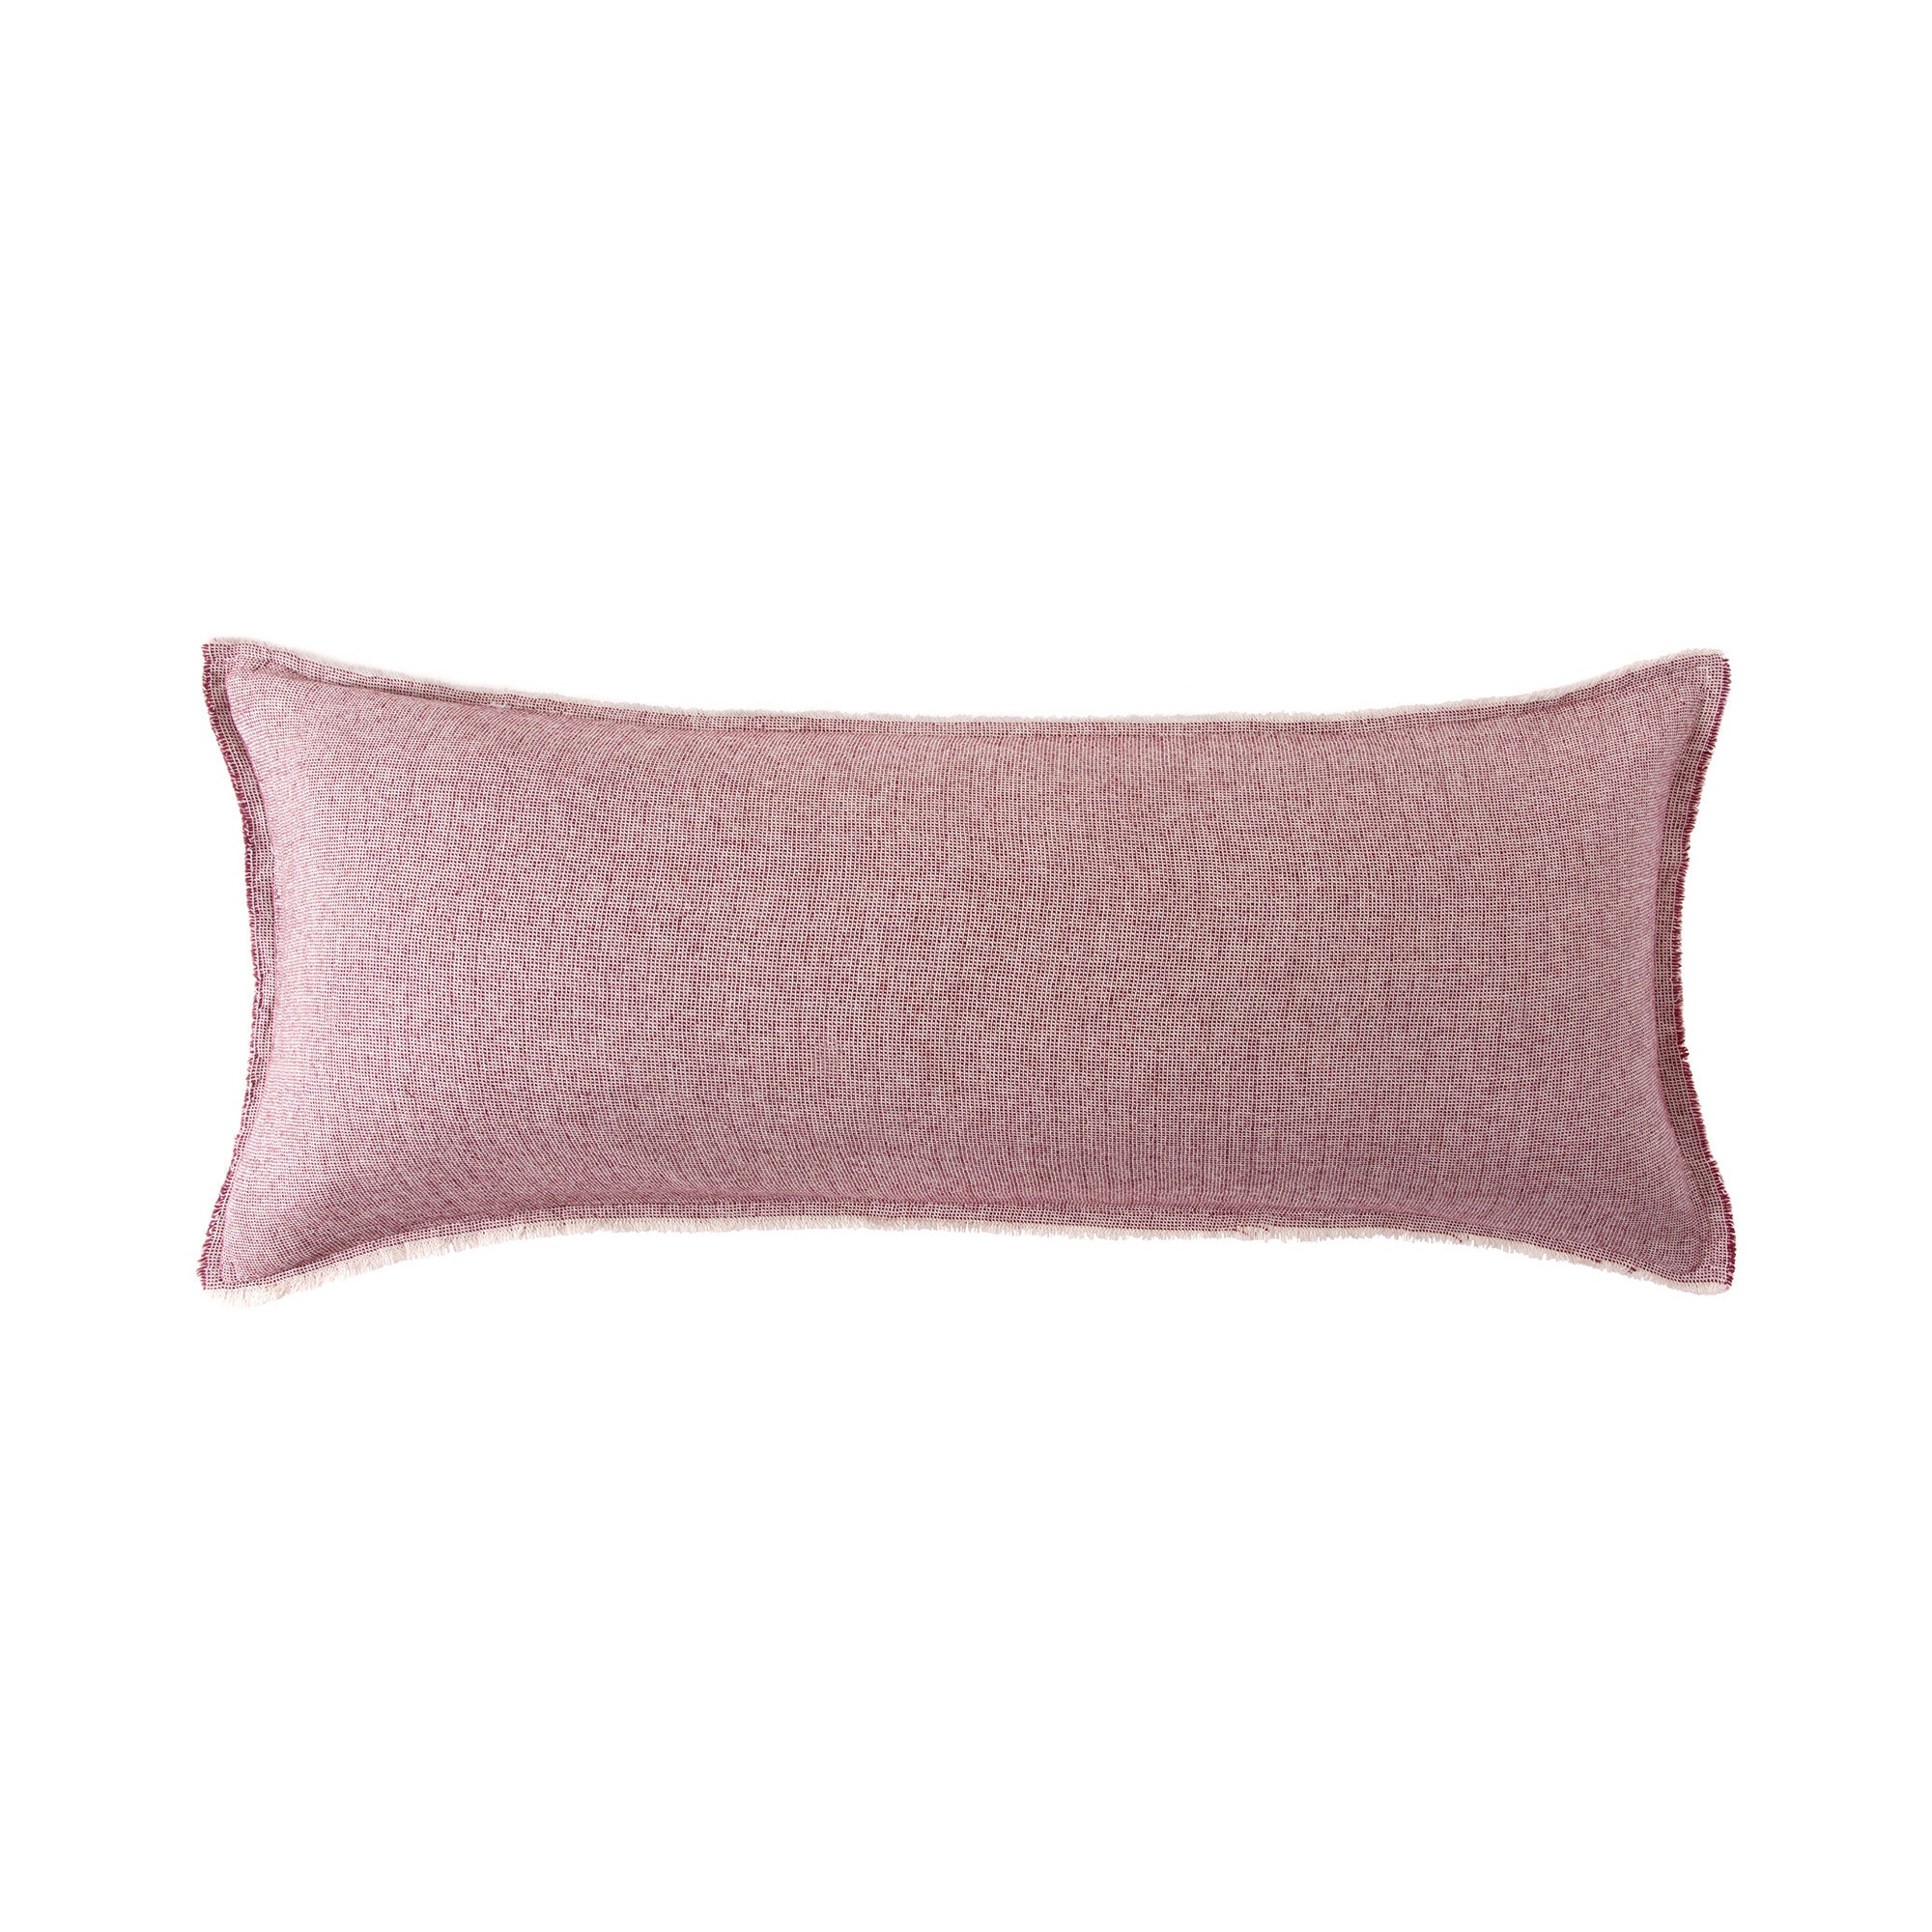 Brentwood Cotton-Wool Throw Pillows – Kassatex